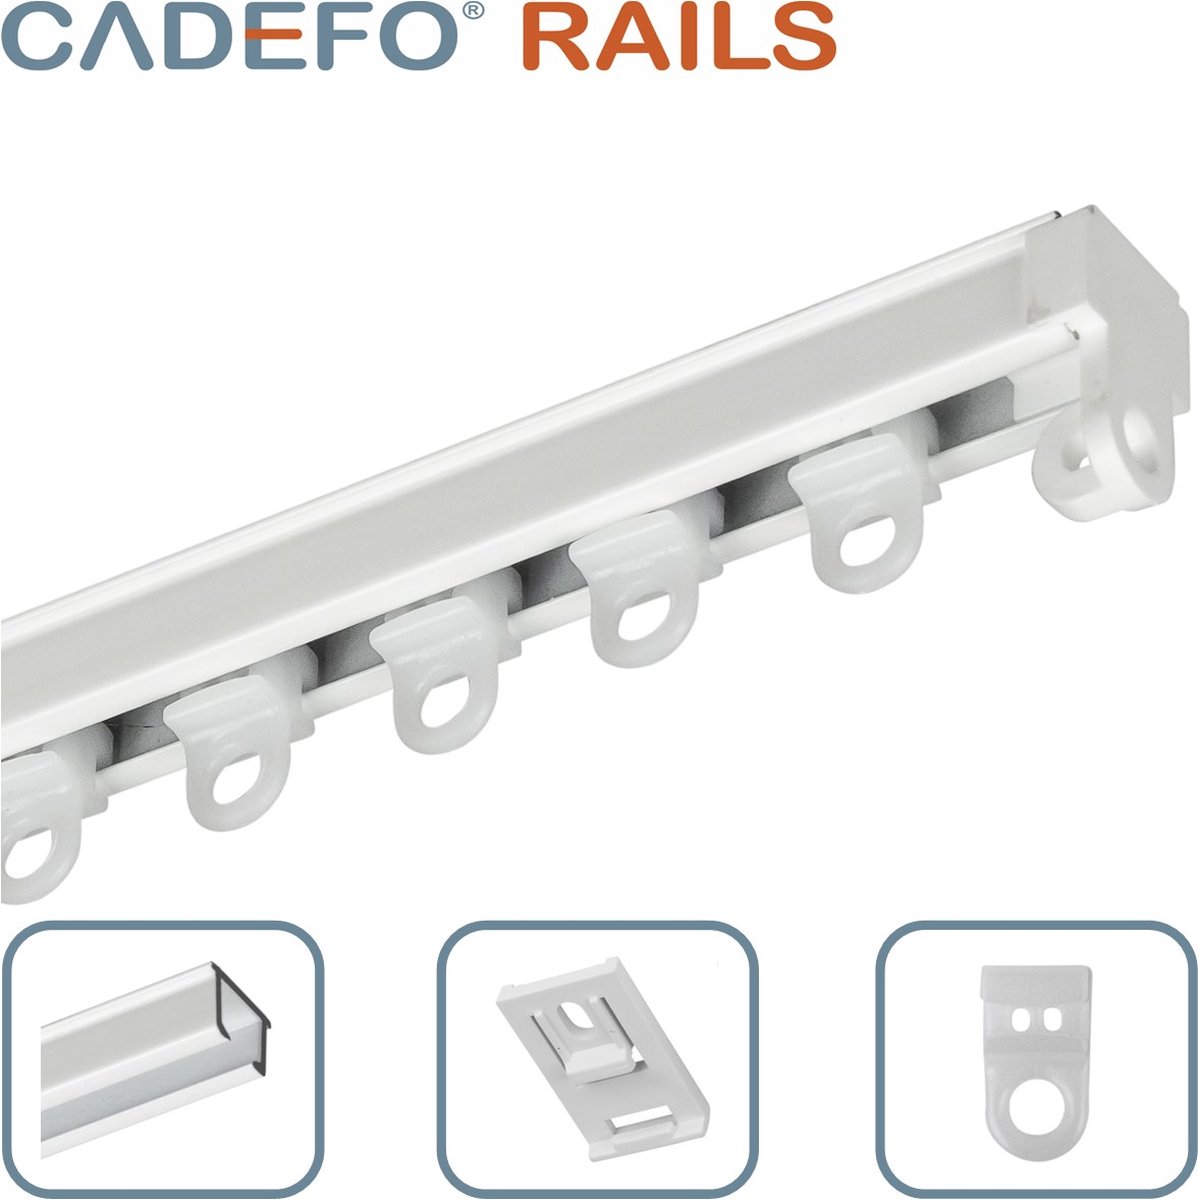 CADEFO RAILS (401 - 450 cm) Gordijnrails - Compleet op maat! - UIT 1 STUK - Leverbaar tot 6 meter - Plafondbevestiging - Lengte 418 cm